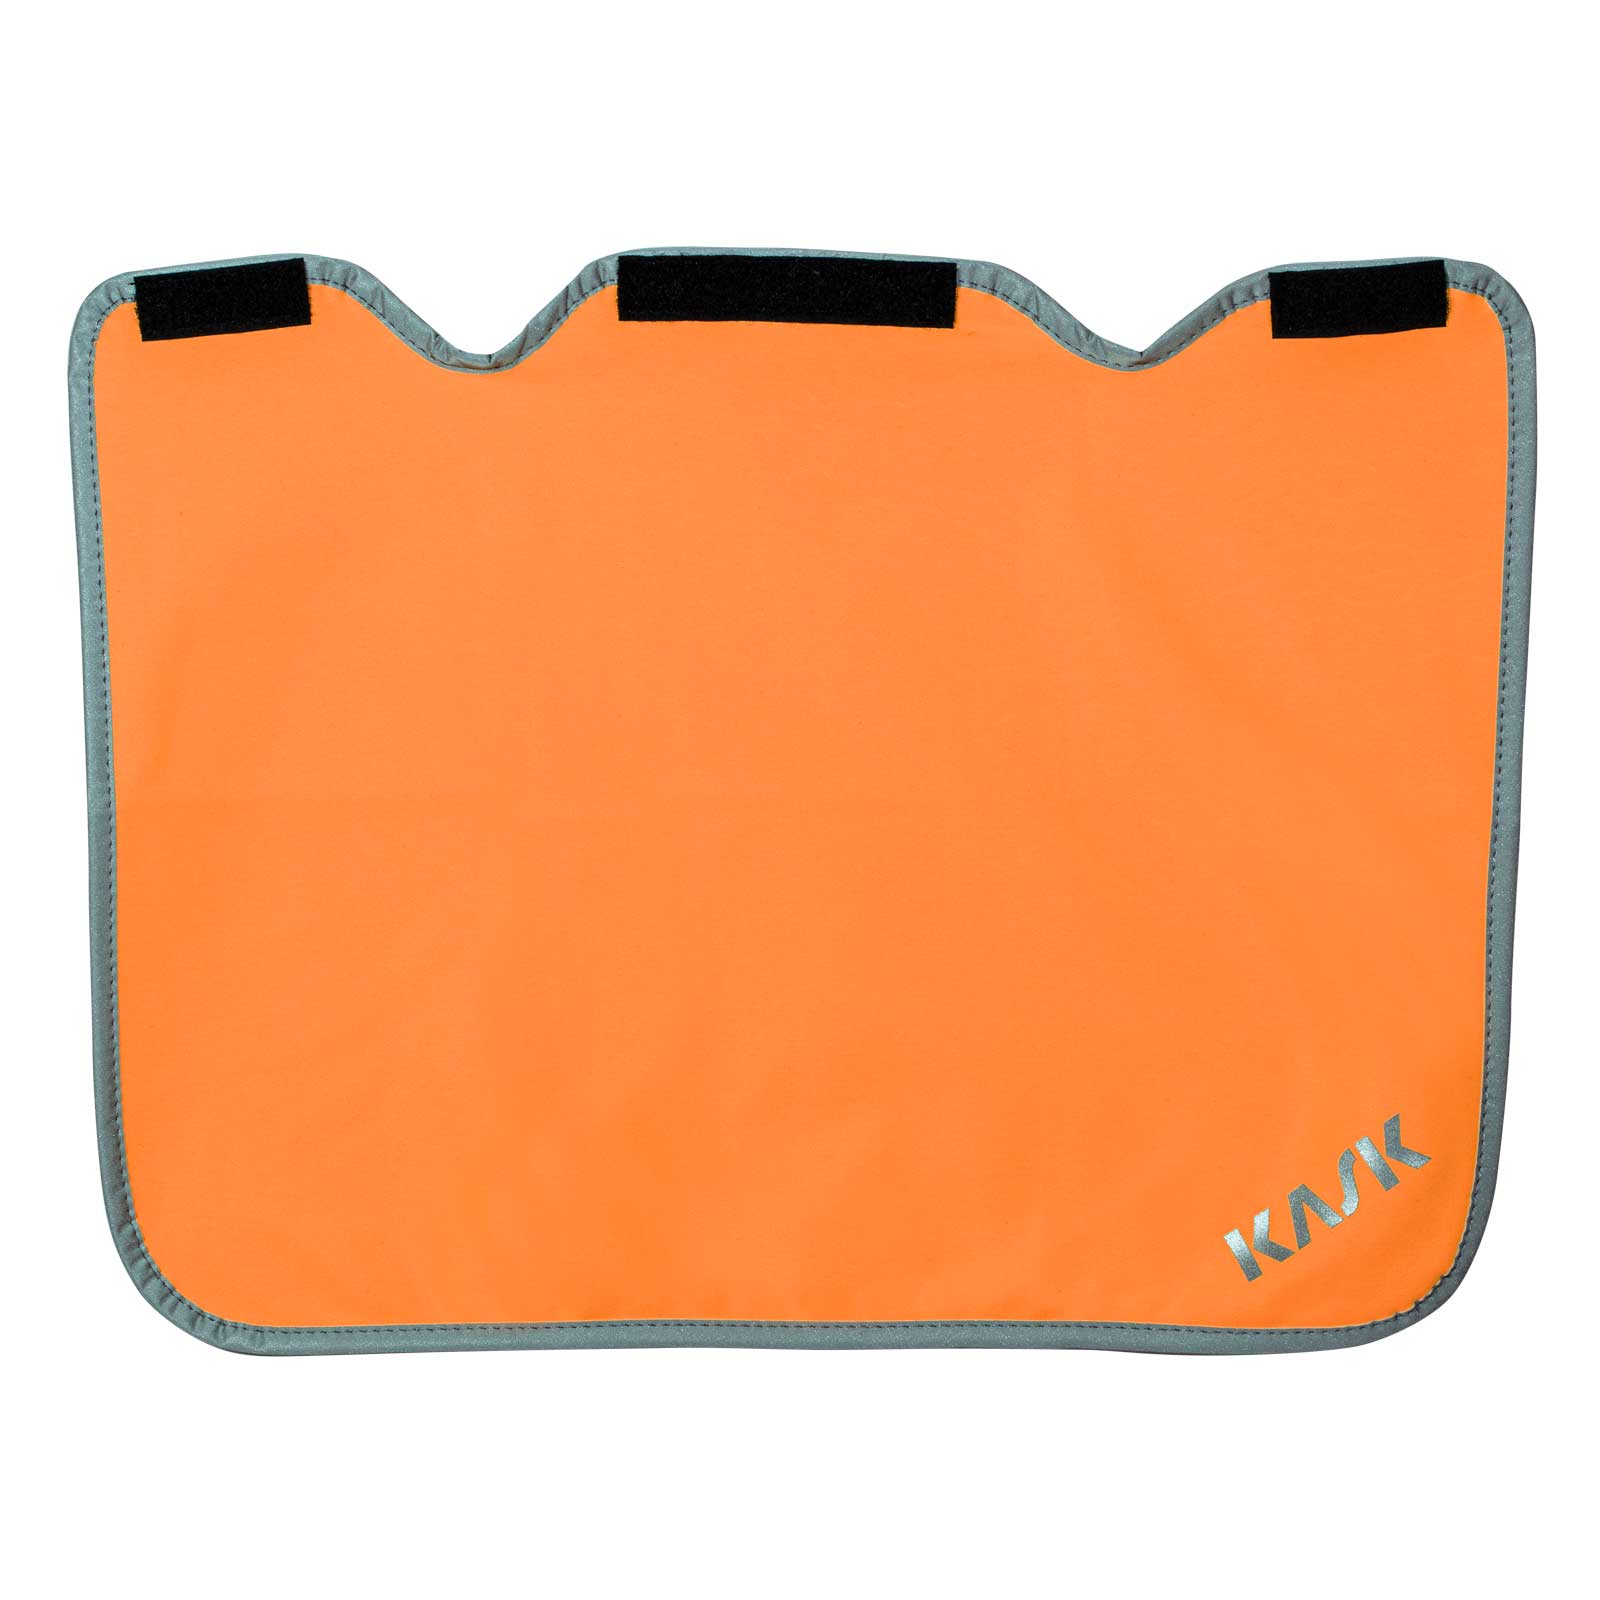 KASK Ohren- und Nackenschutz RW für Plasma Windschutz, Kälteschutz, UV-Schutz Farbe:orange fluo von KASK